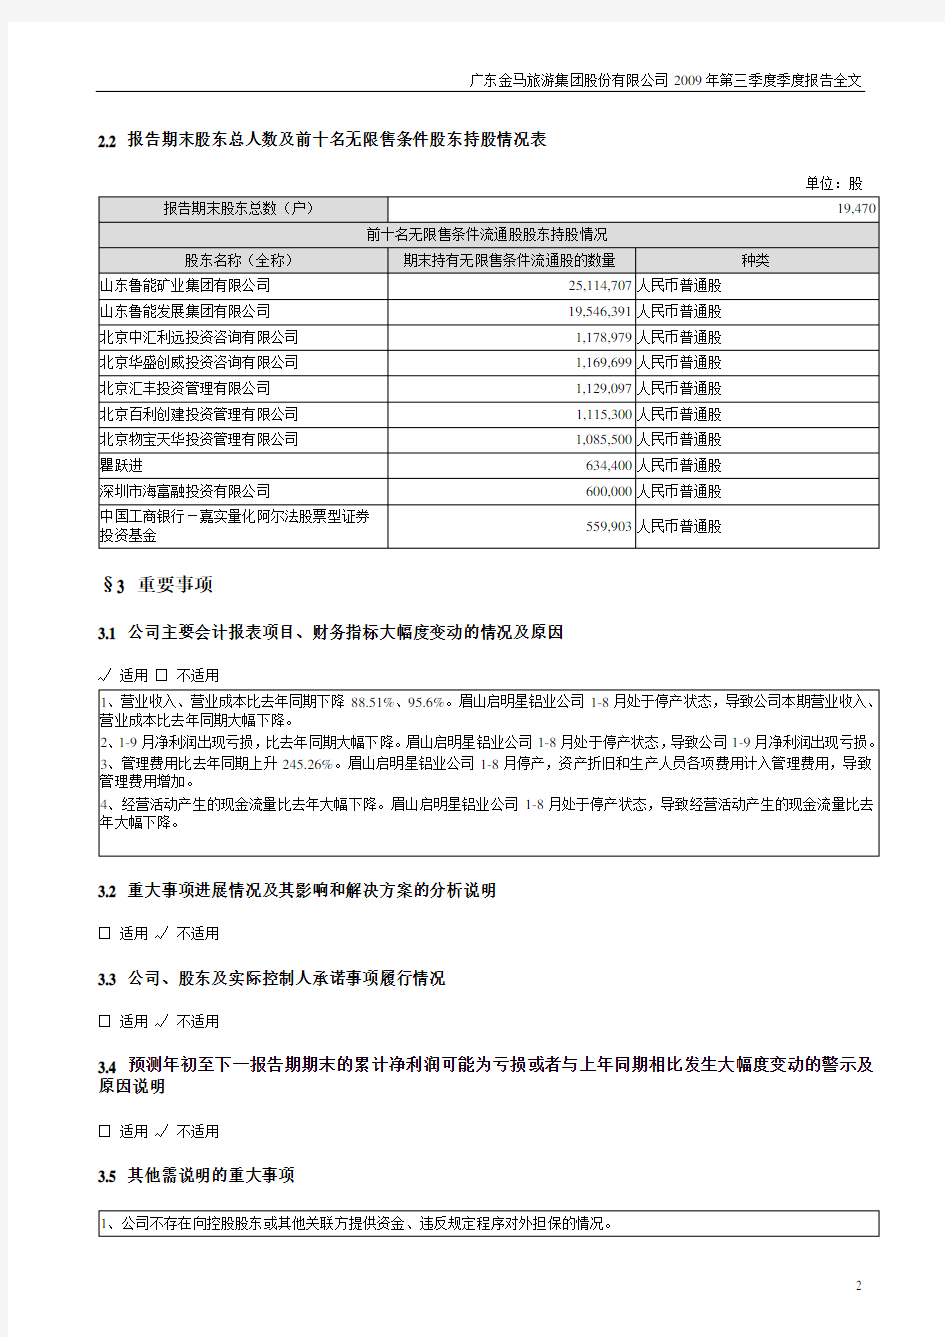 广东金马旅游集团股份有限公司2009年第三季度季度报告全文